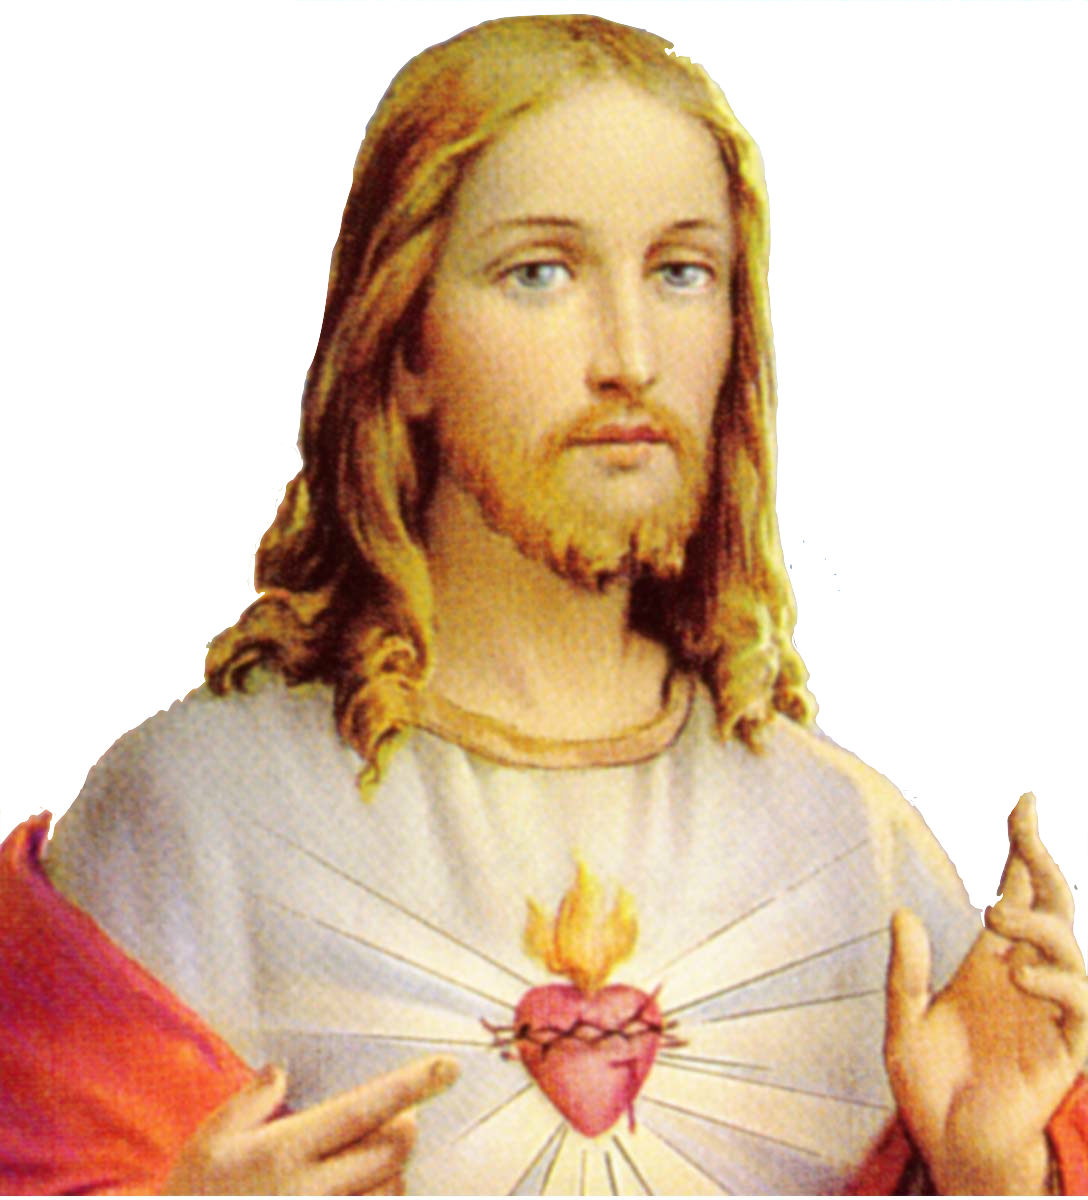 Download Christ God Christianity Black Prophet Jesus HQ PNG Image ...